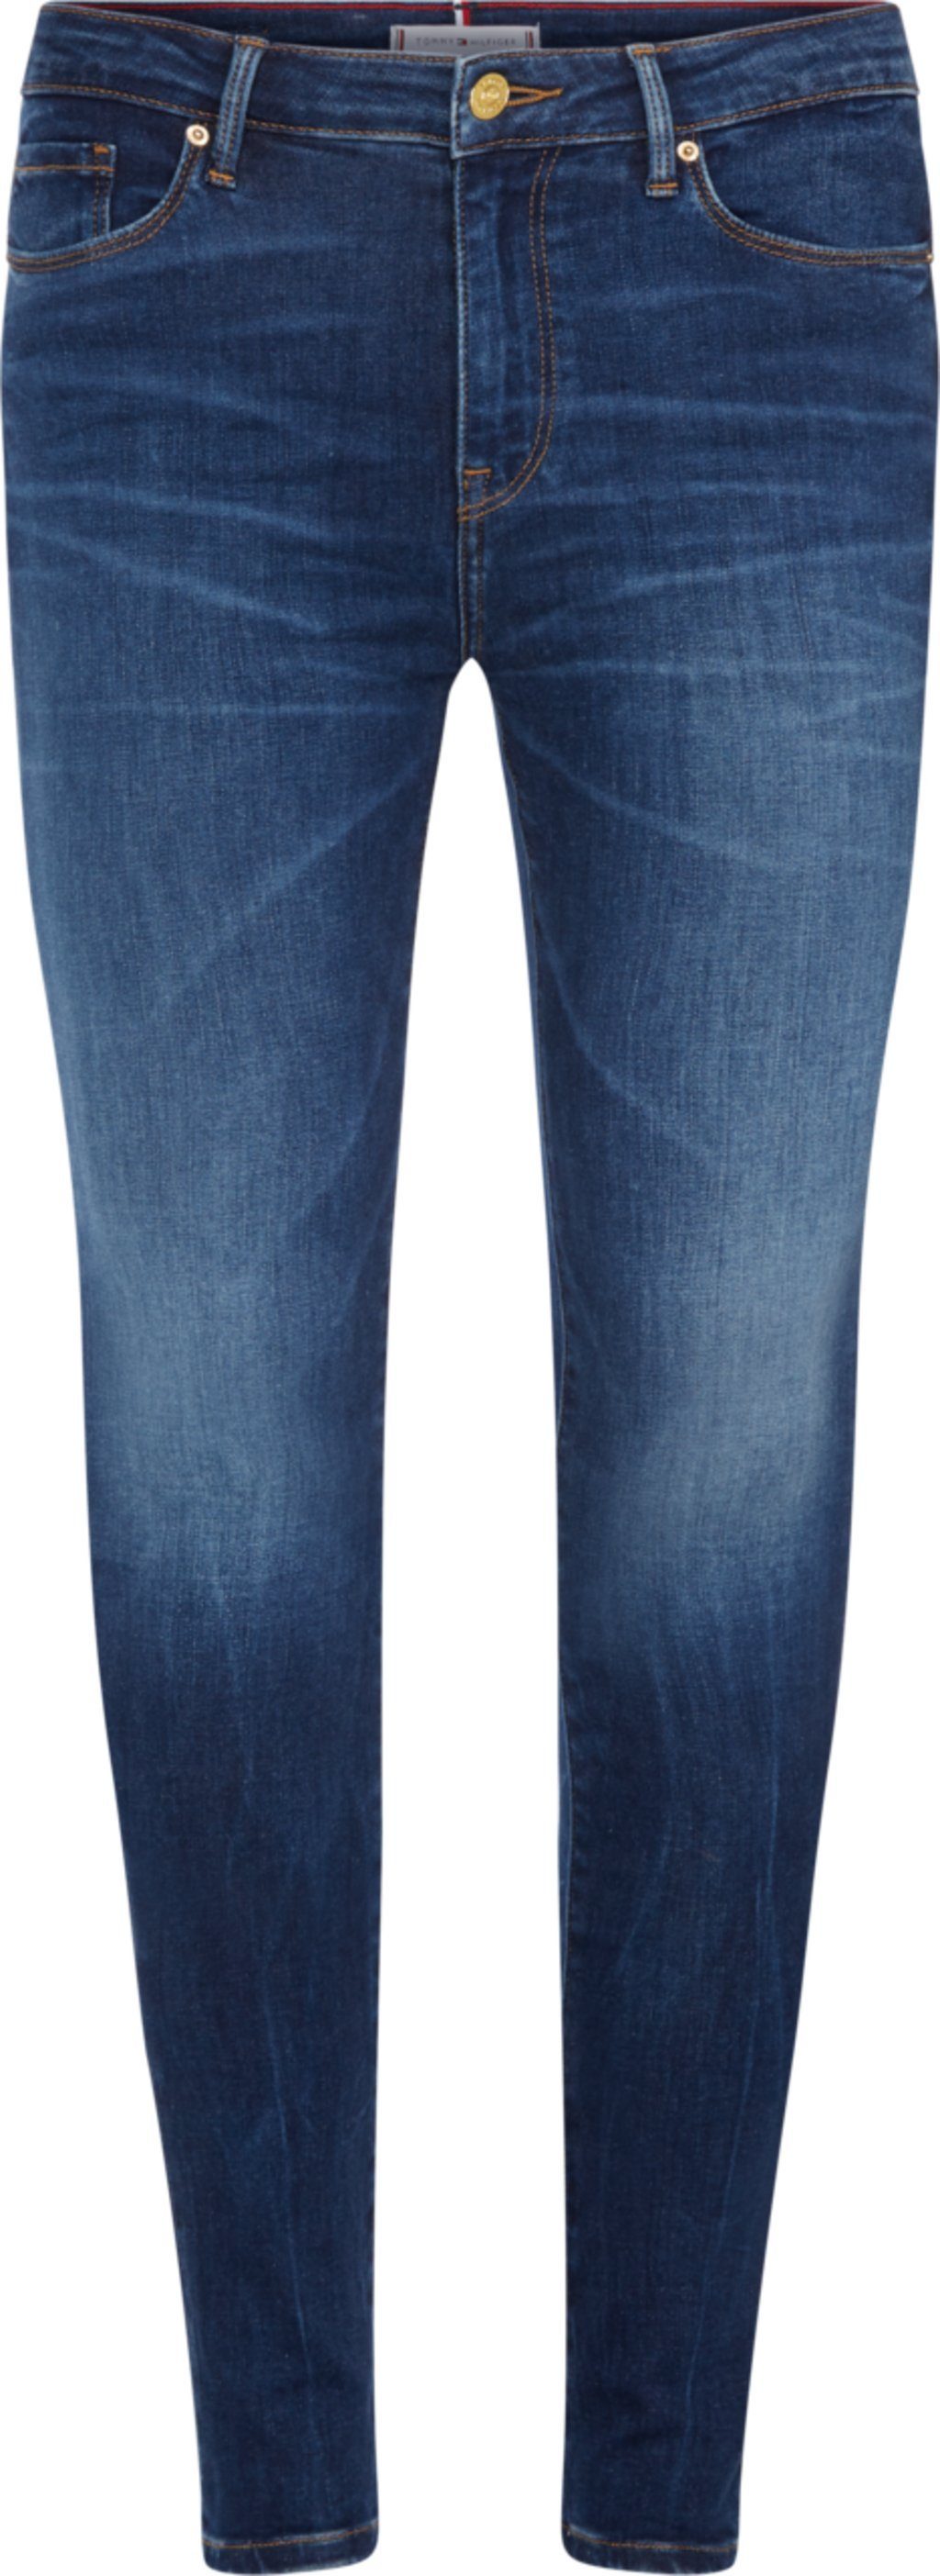 Tommy Hilfiger 7/8-Jeans online kaufen | OTTO